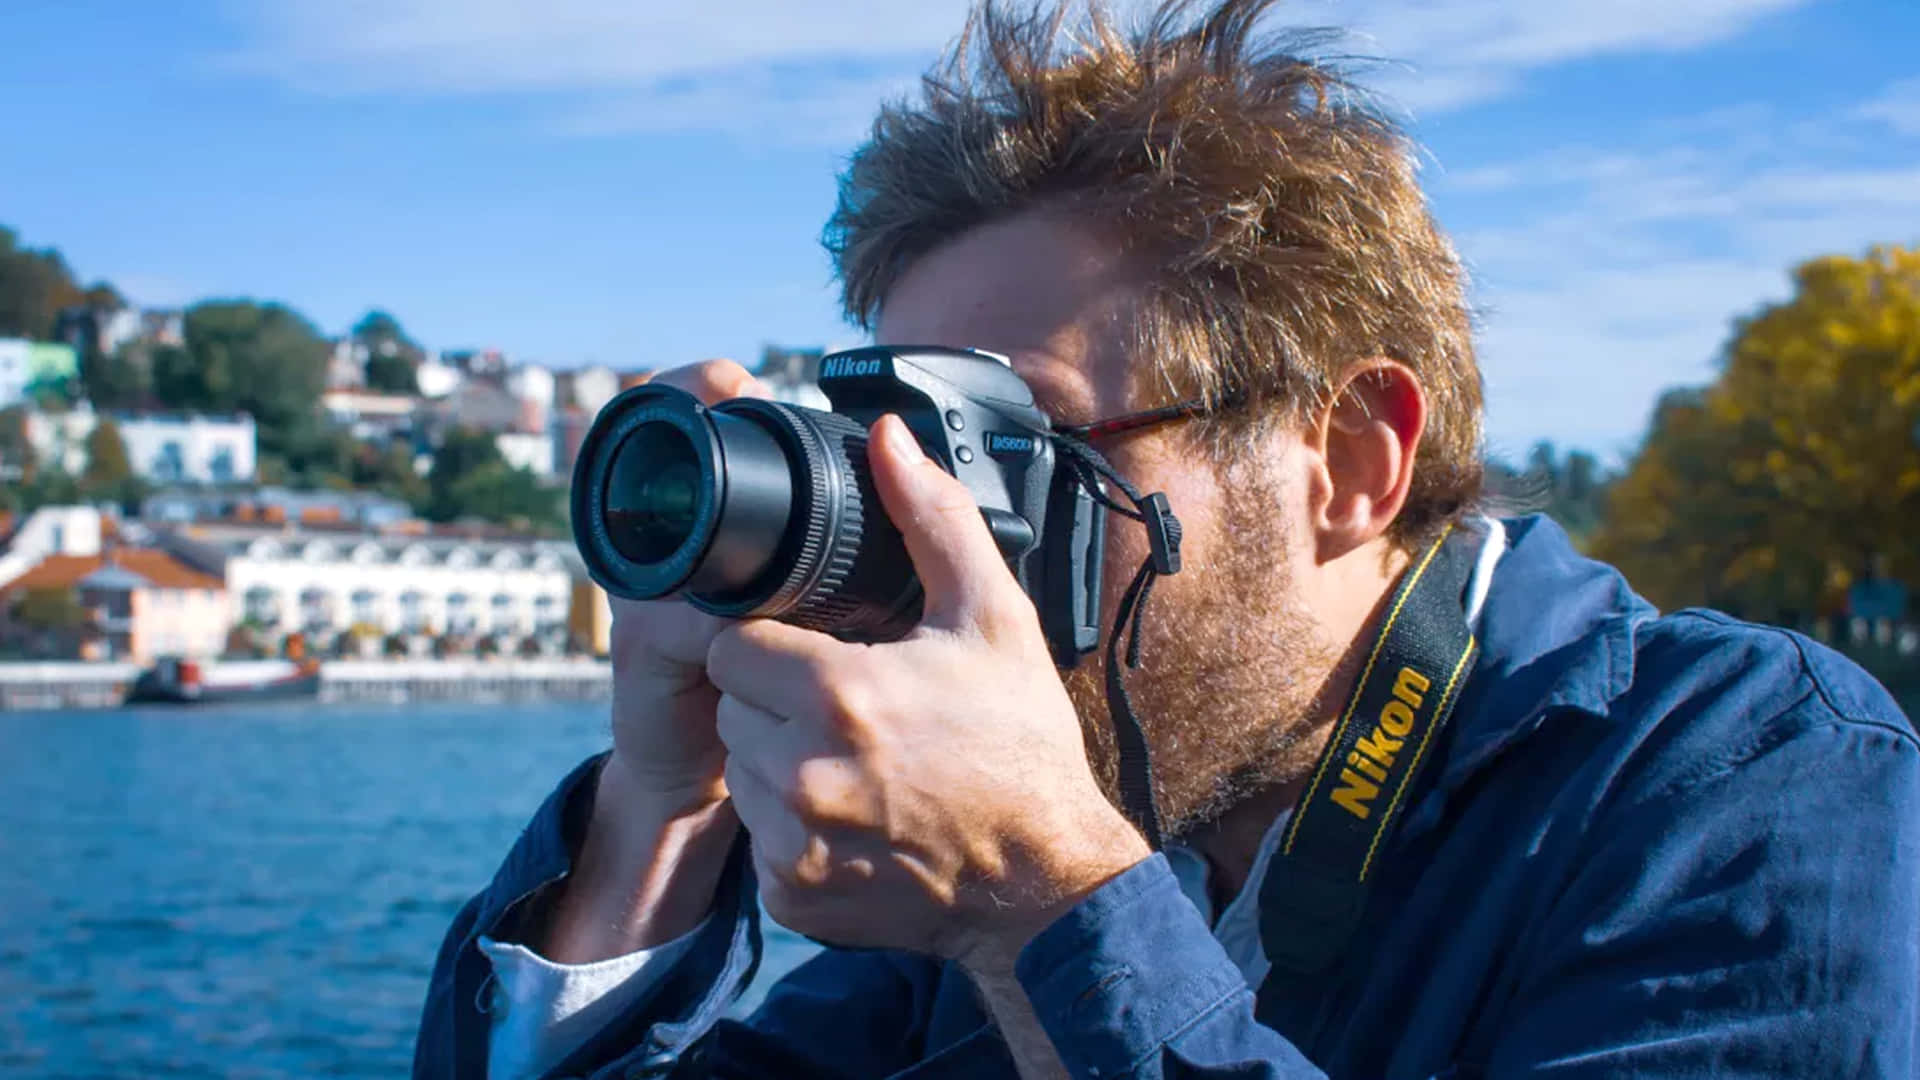 Professionellefotografen Verwenden Dslr-kameras, Um Kostbare Momente Des Lebens Einzufangen.